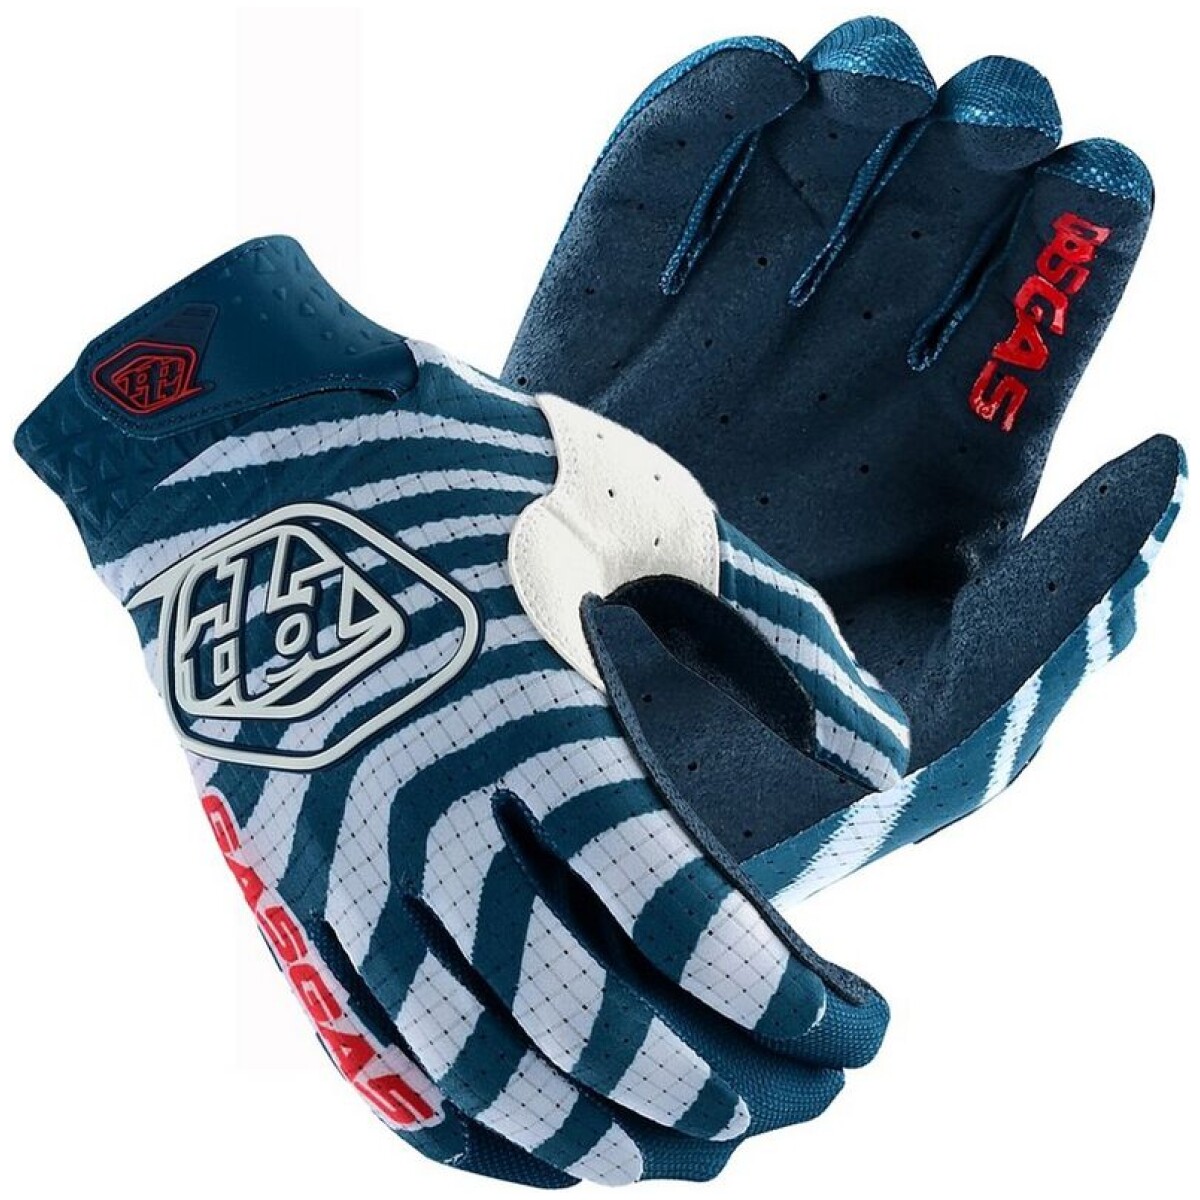 GasGas Air Gloves MX Handschuhe